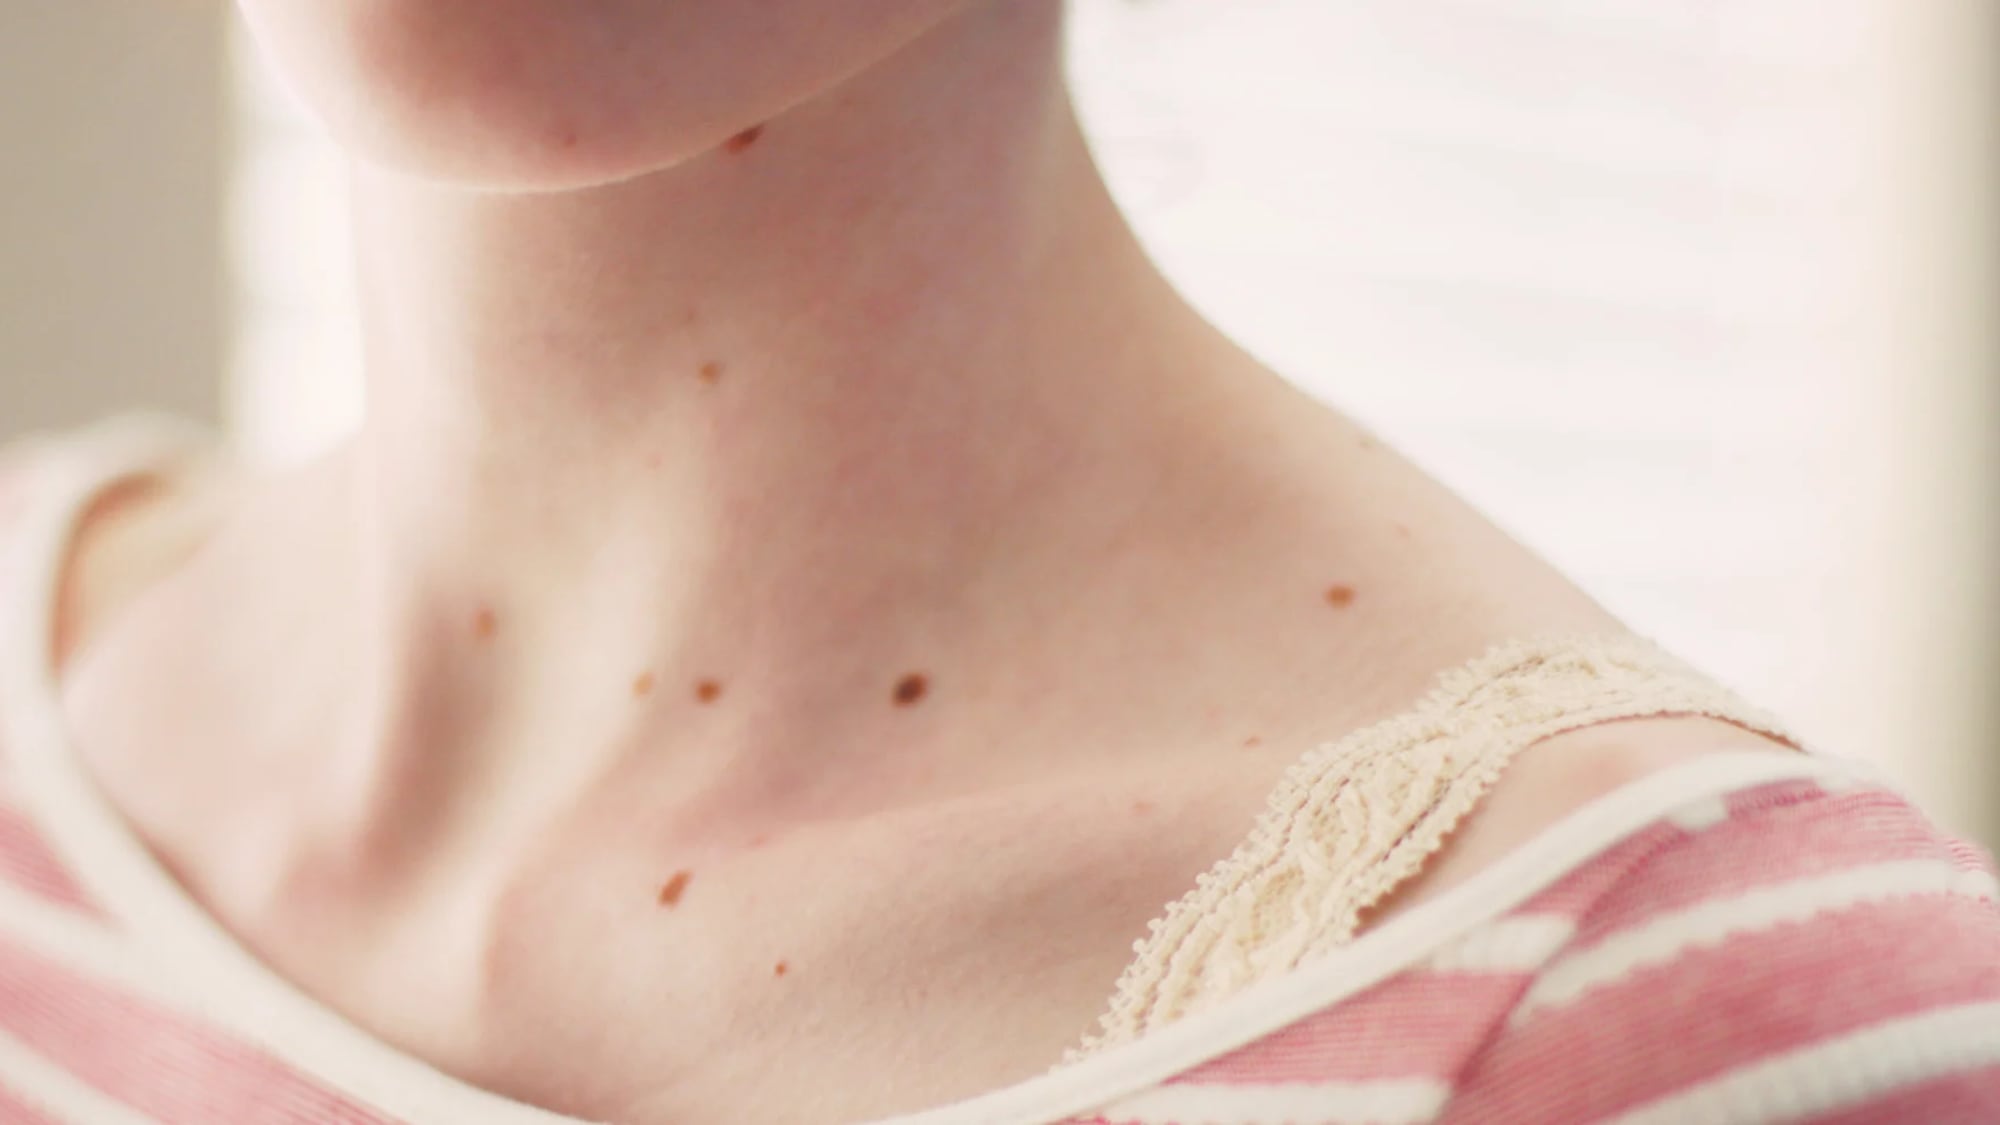 Presta atención a estos cambios en tu piel, podría ser cáncer